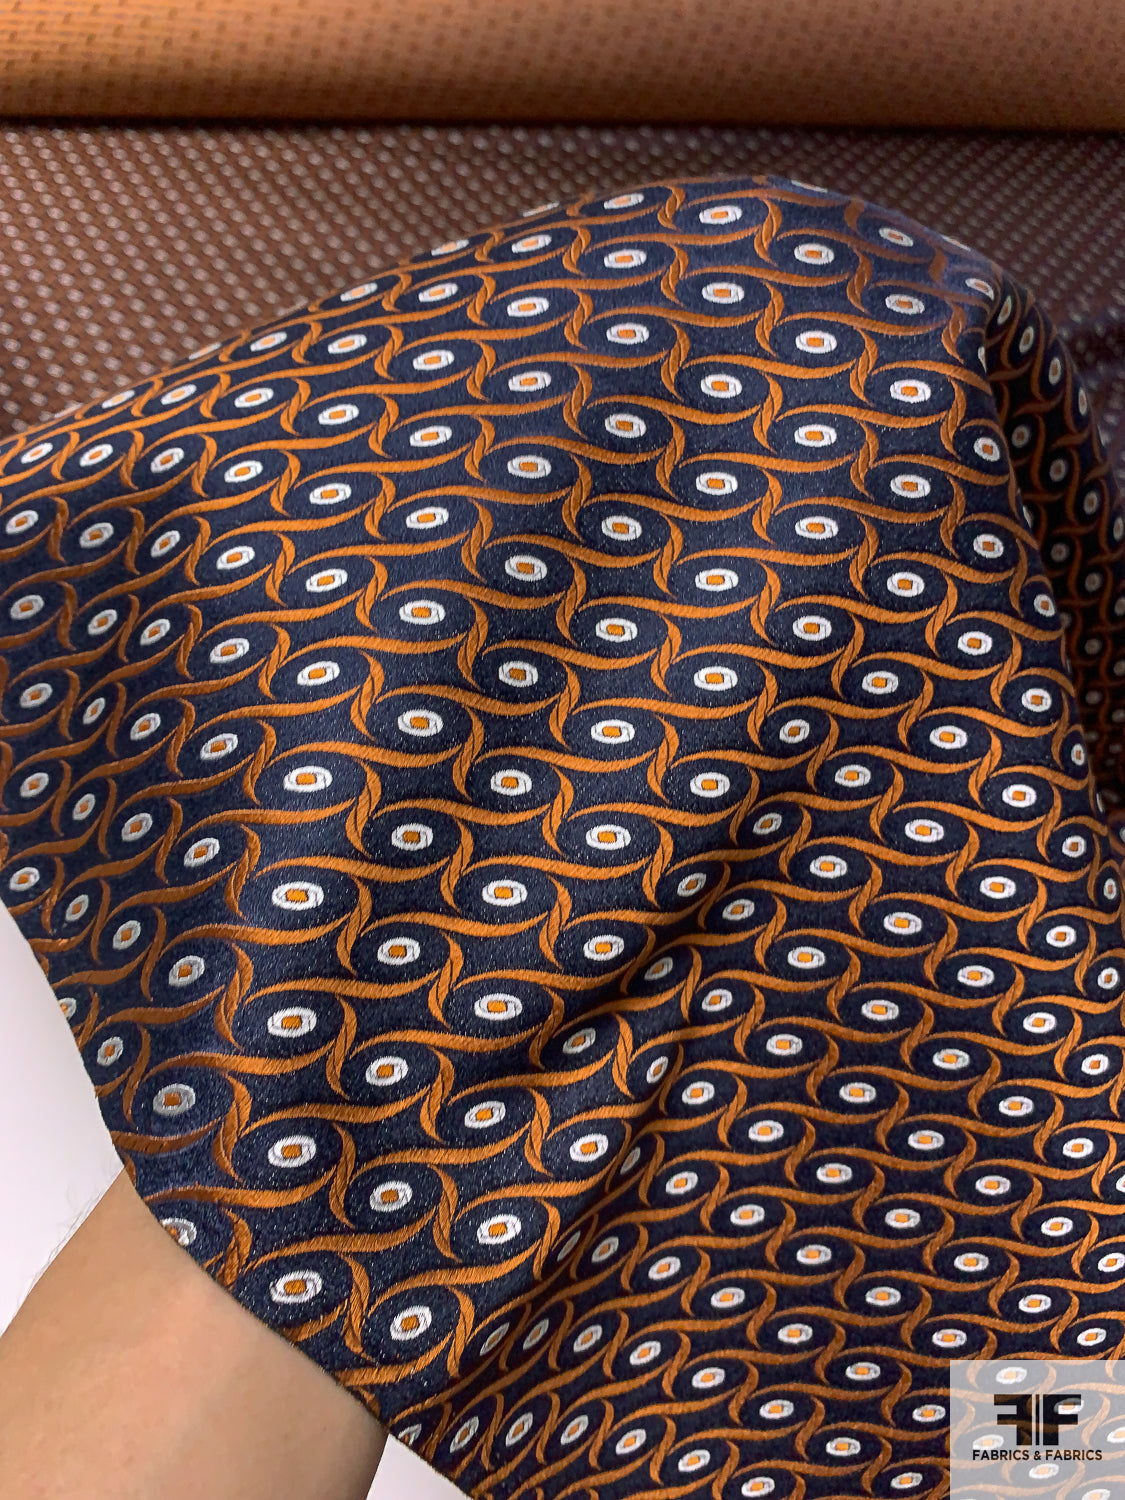 Wavy Oval Silk Necktie Jacquard Brocade - Navy / Orange / White